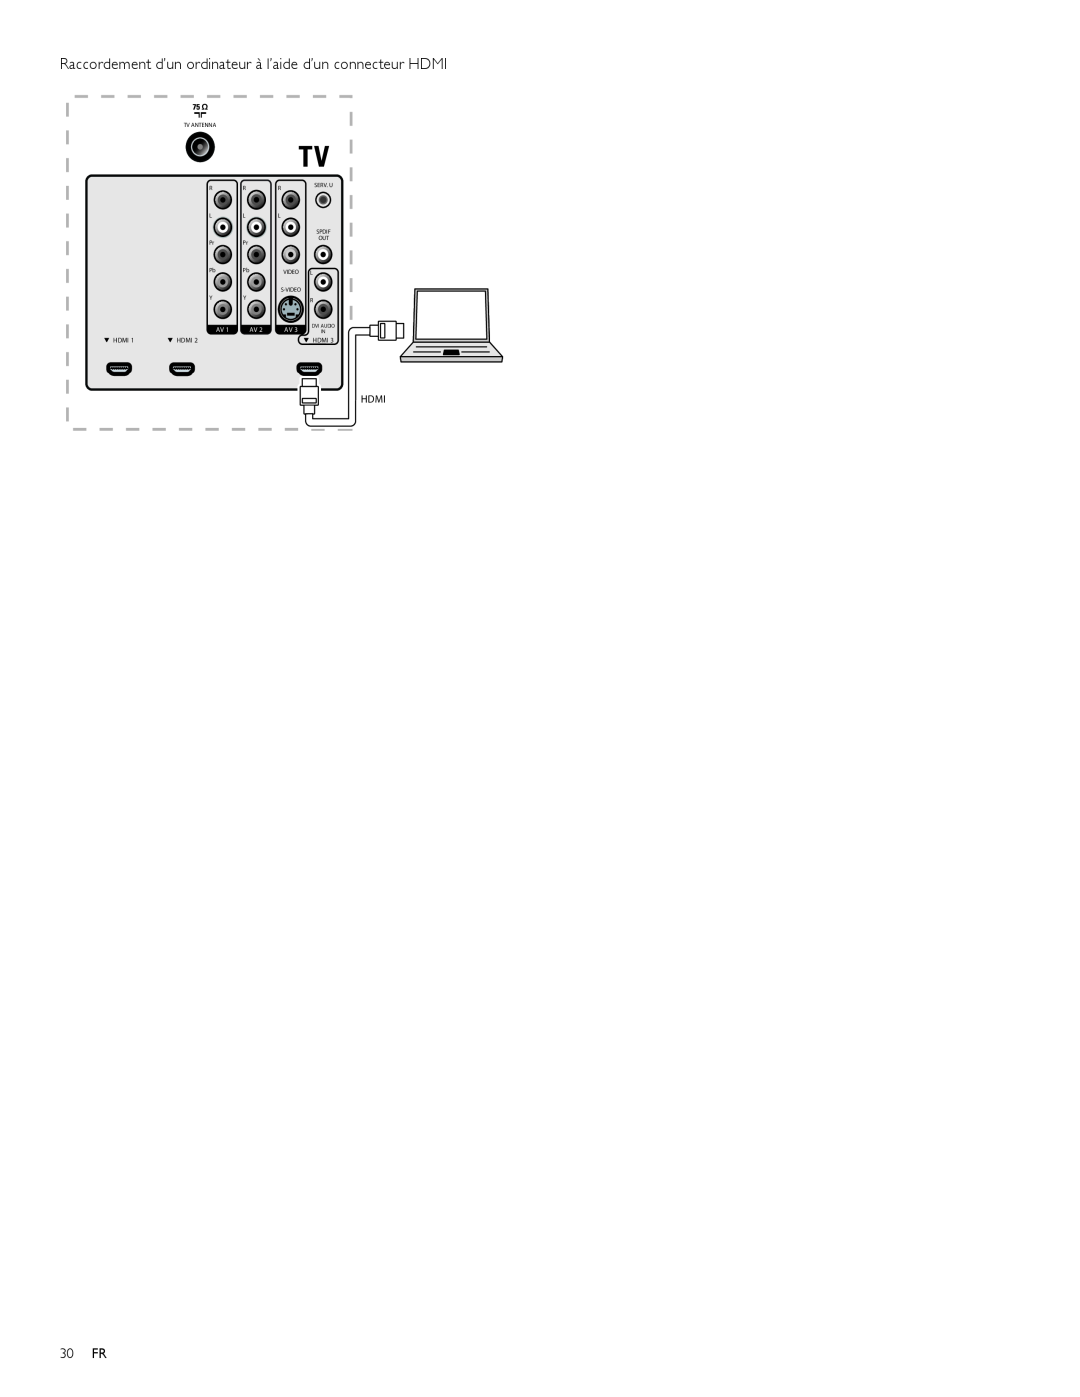 Magnavox 47MF439B user manual Raccordement d’un ordinateur à l’aide d’un connecteur HDMI, 30 FR, Hdmi, Tv Antenna 